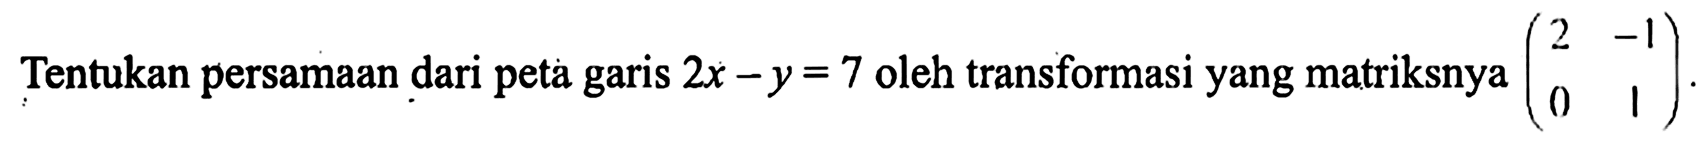 Tentukan persamaan dari peta garis 2x-y=7 oleh transformasi yang matriksnya (2 -1 0 1).